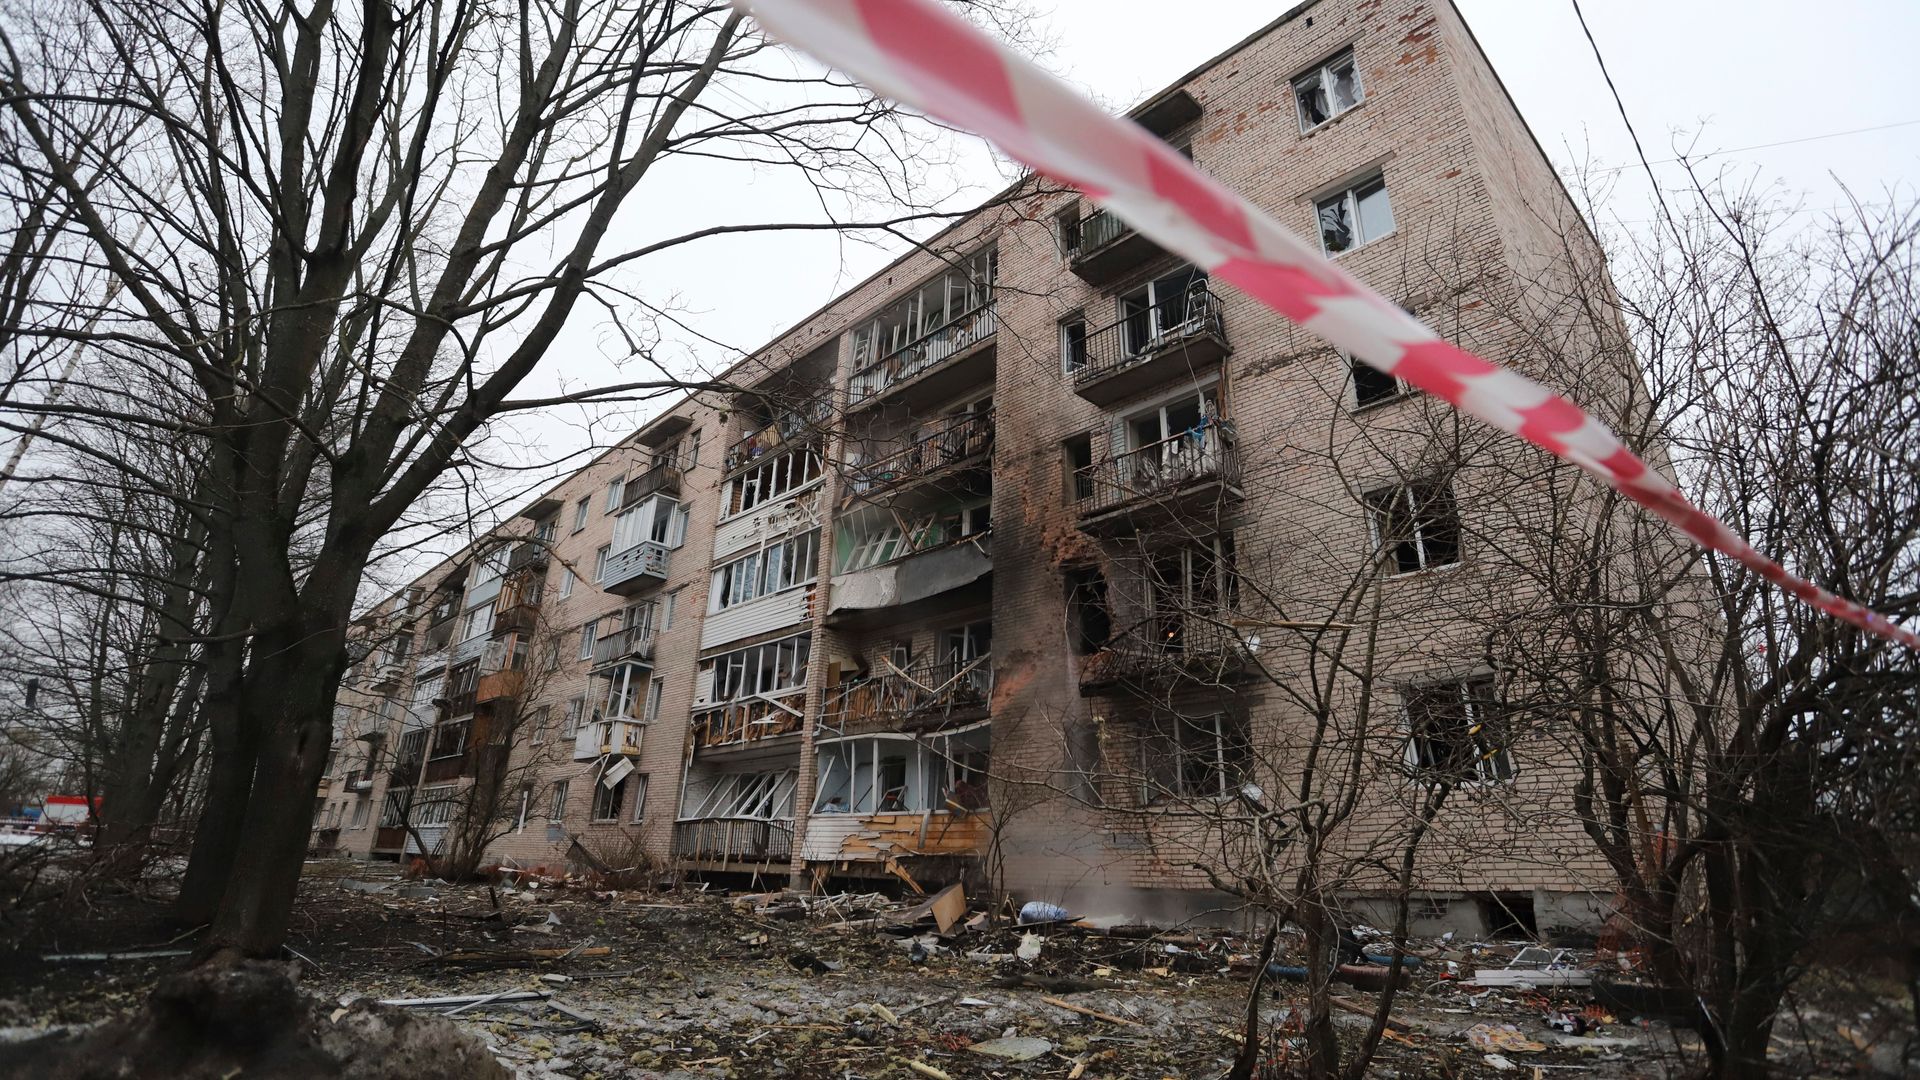 russland-ukraine-krieg: drohne beschädigt offenbar wohnhaus in st.-petersburg